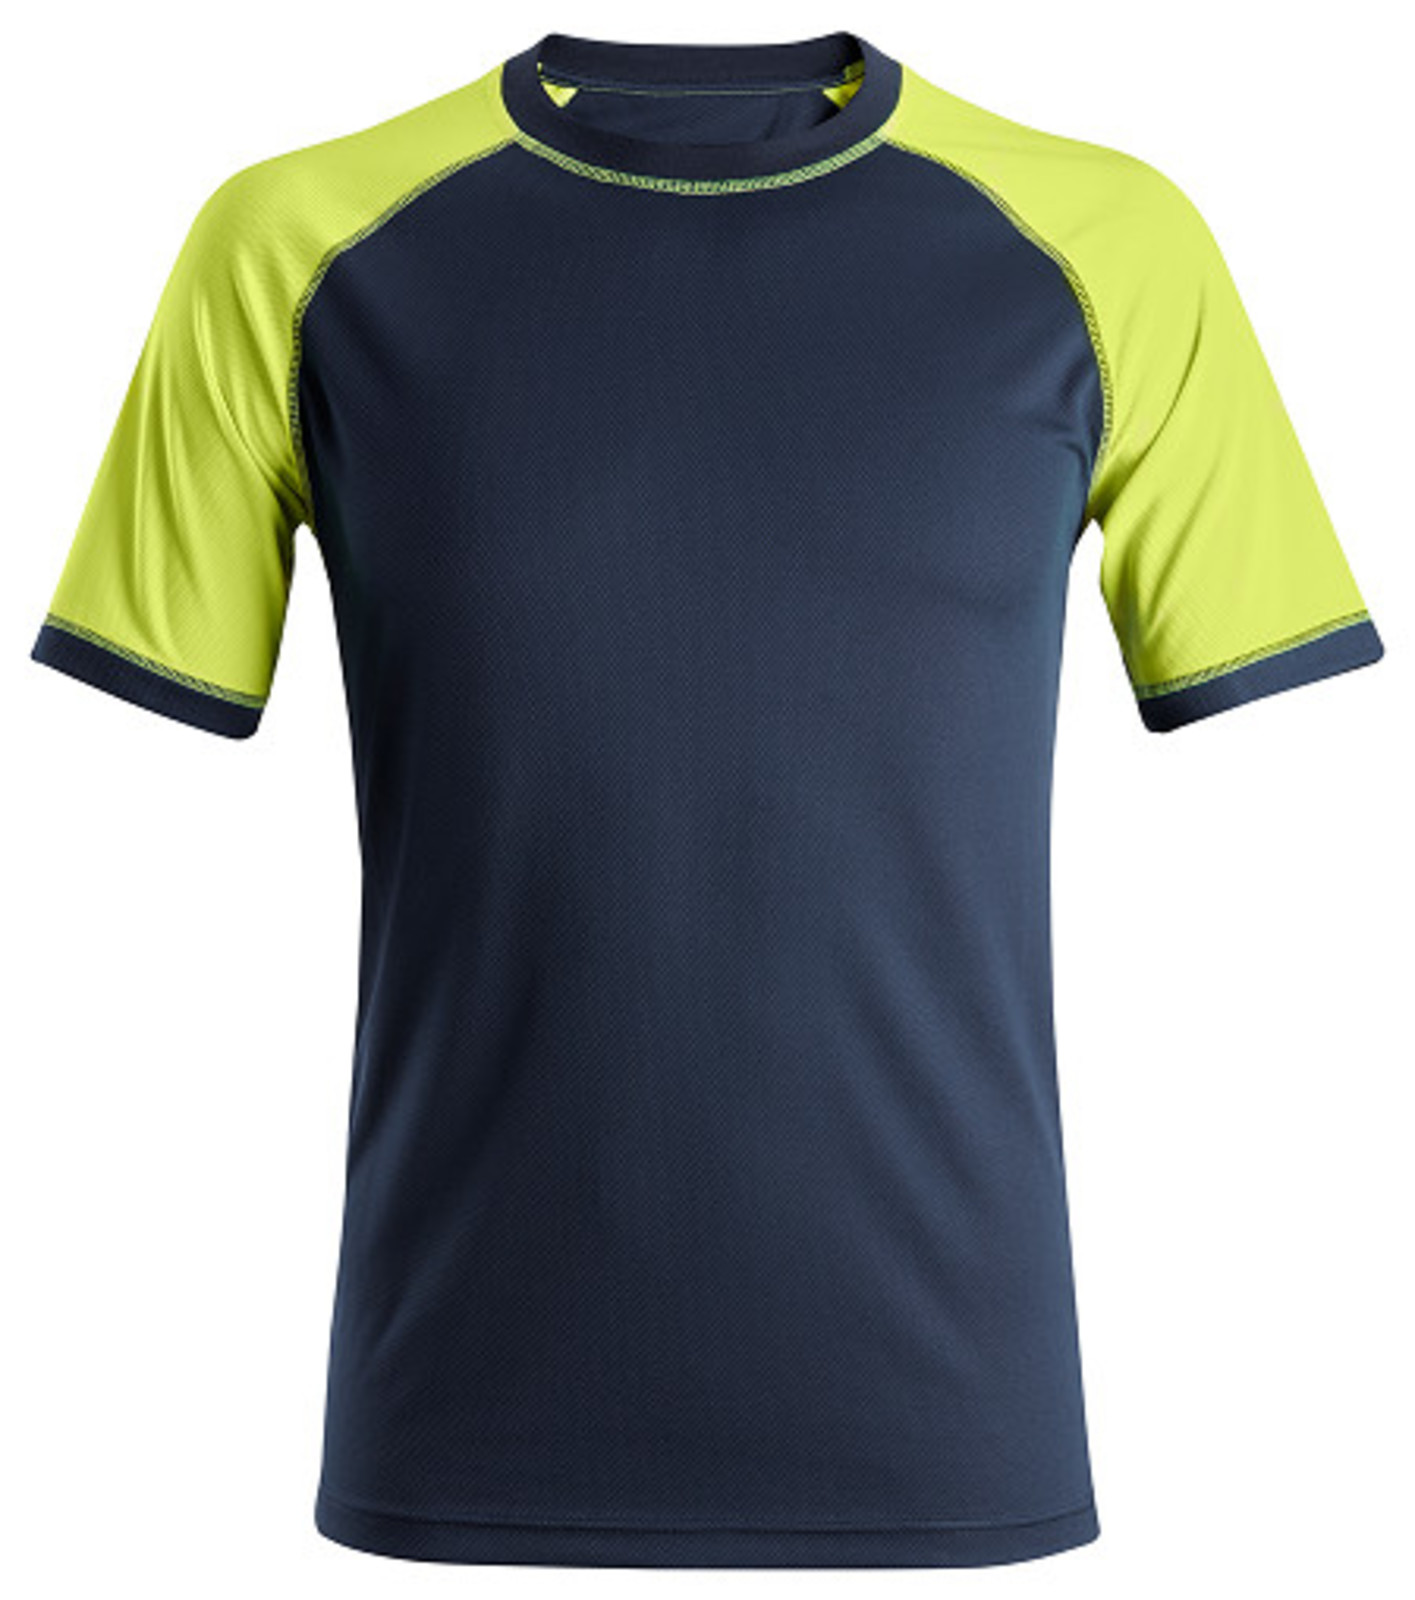 Pracovné tričko Snickers® Neon s krátkym rukávom - veľkosť: M, farba: navy/žltá